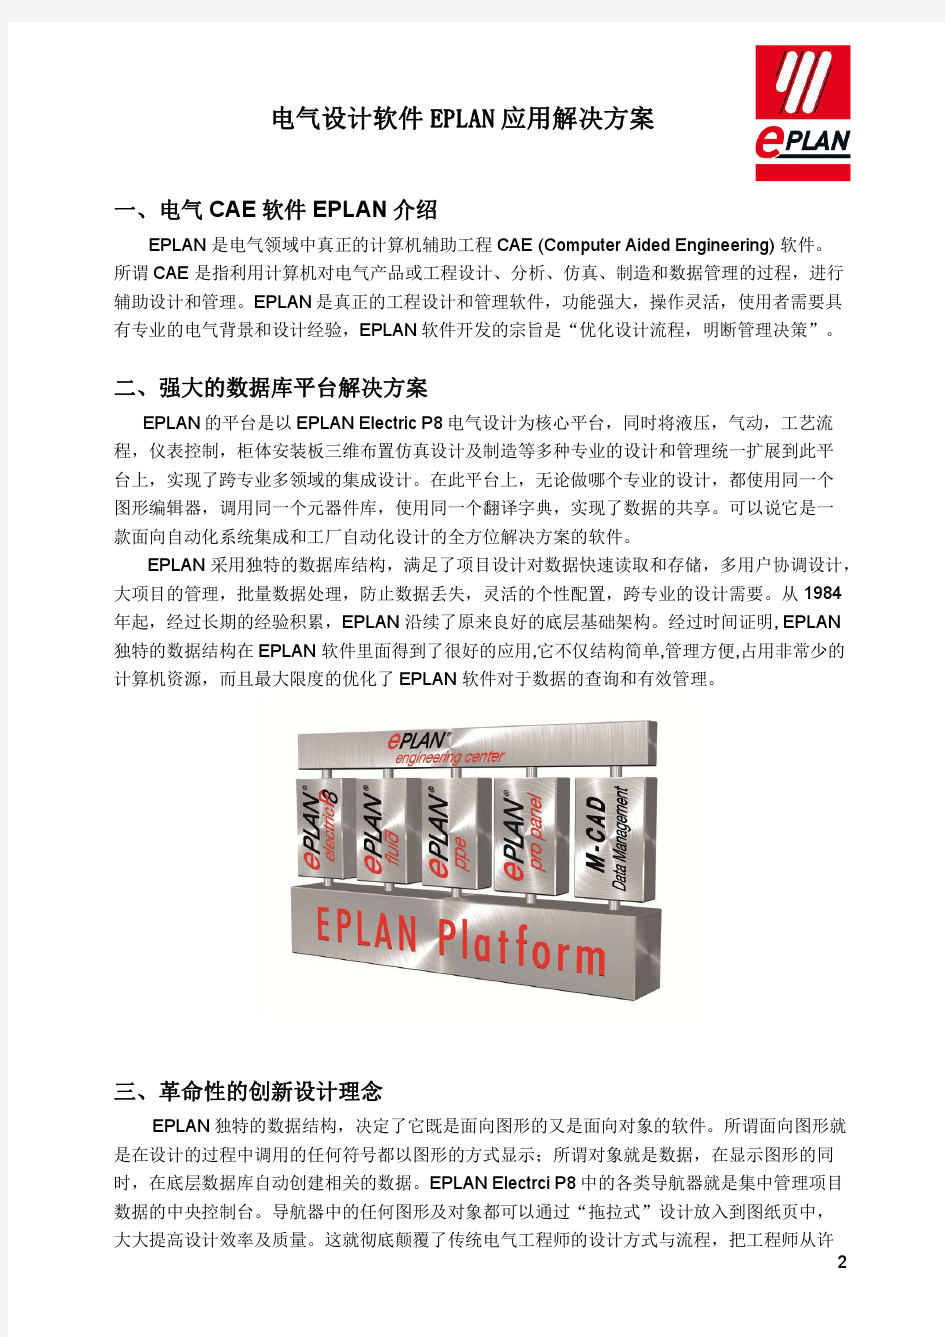 7电气设计软件EPLAN应用解决方案V2 1